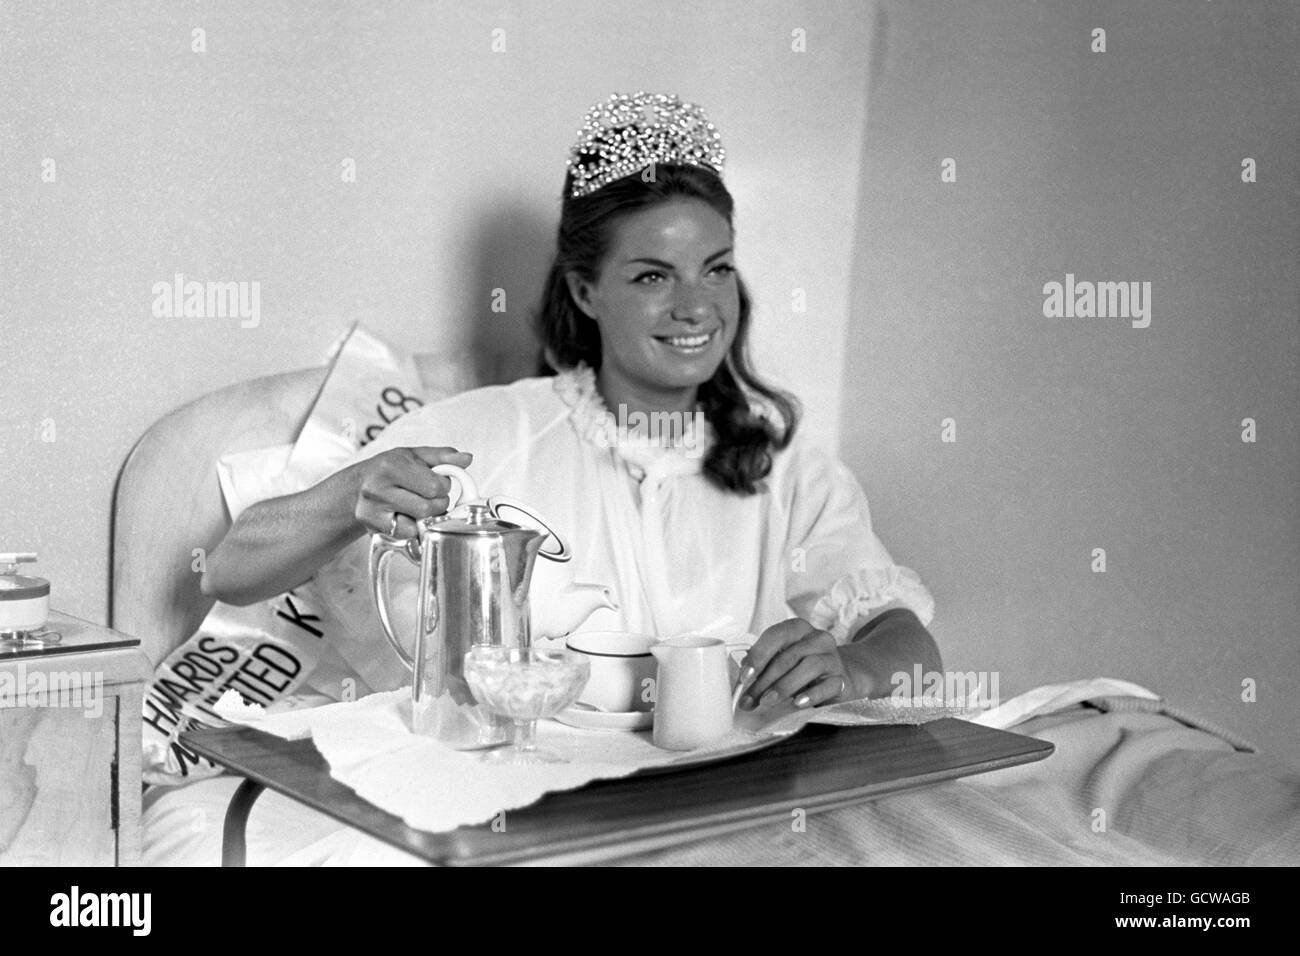 Kathleen Winstanley, qui a remporté le titre de Miss Royaume-Uni, dans sa chambre d'hôtel à Blackpool. Banque D'Images